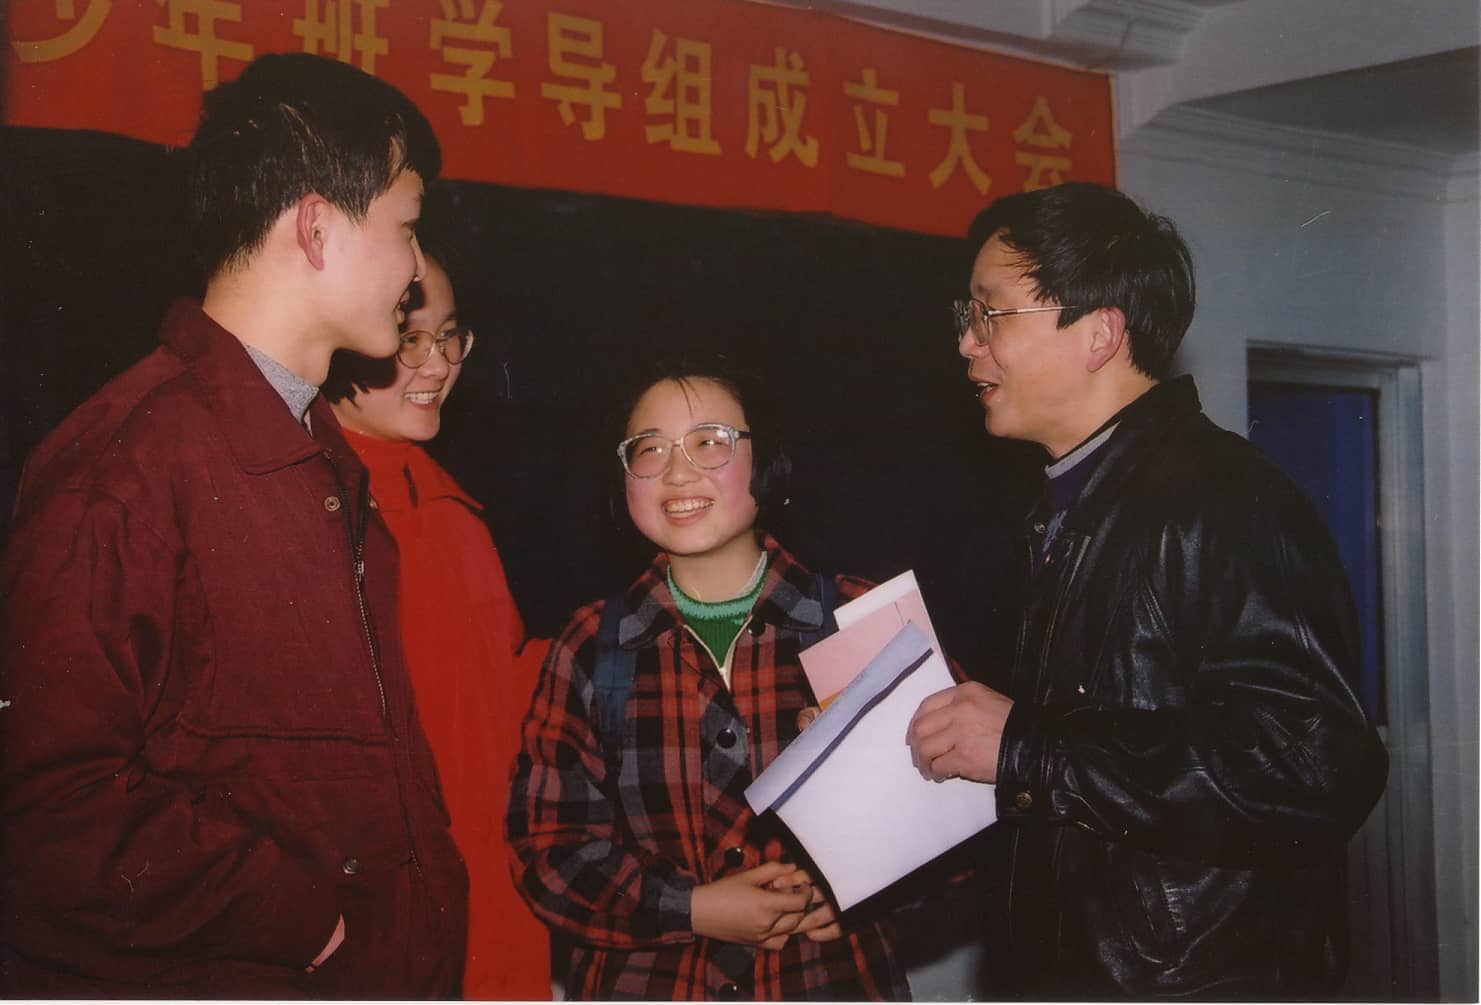 中国科学技术大学少年班学院举办专业班班主任聘任仪式